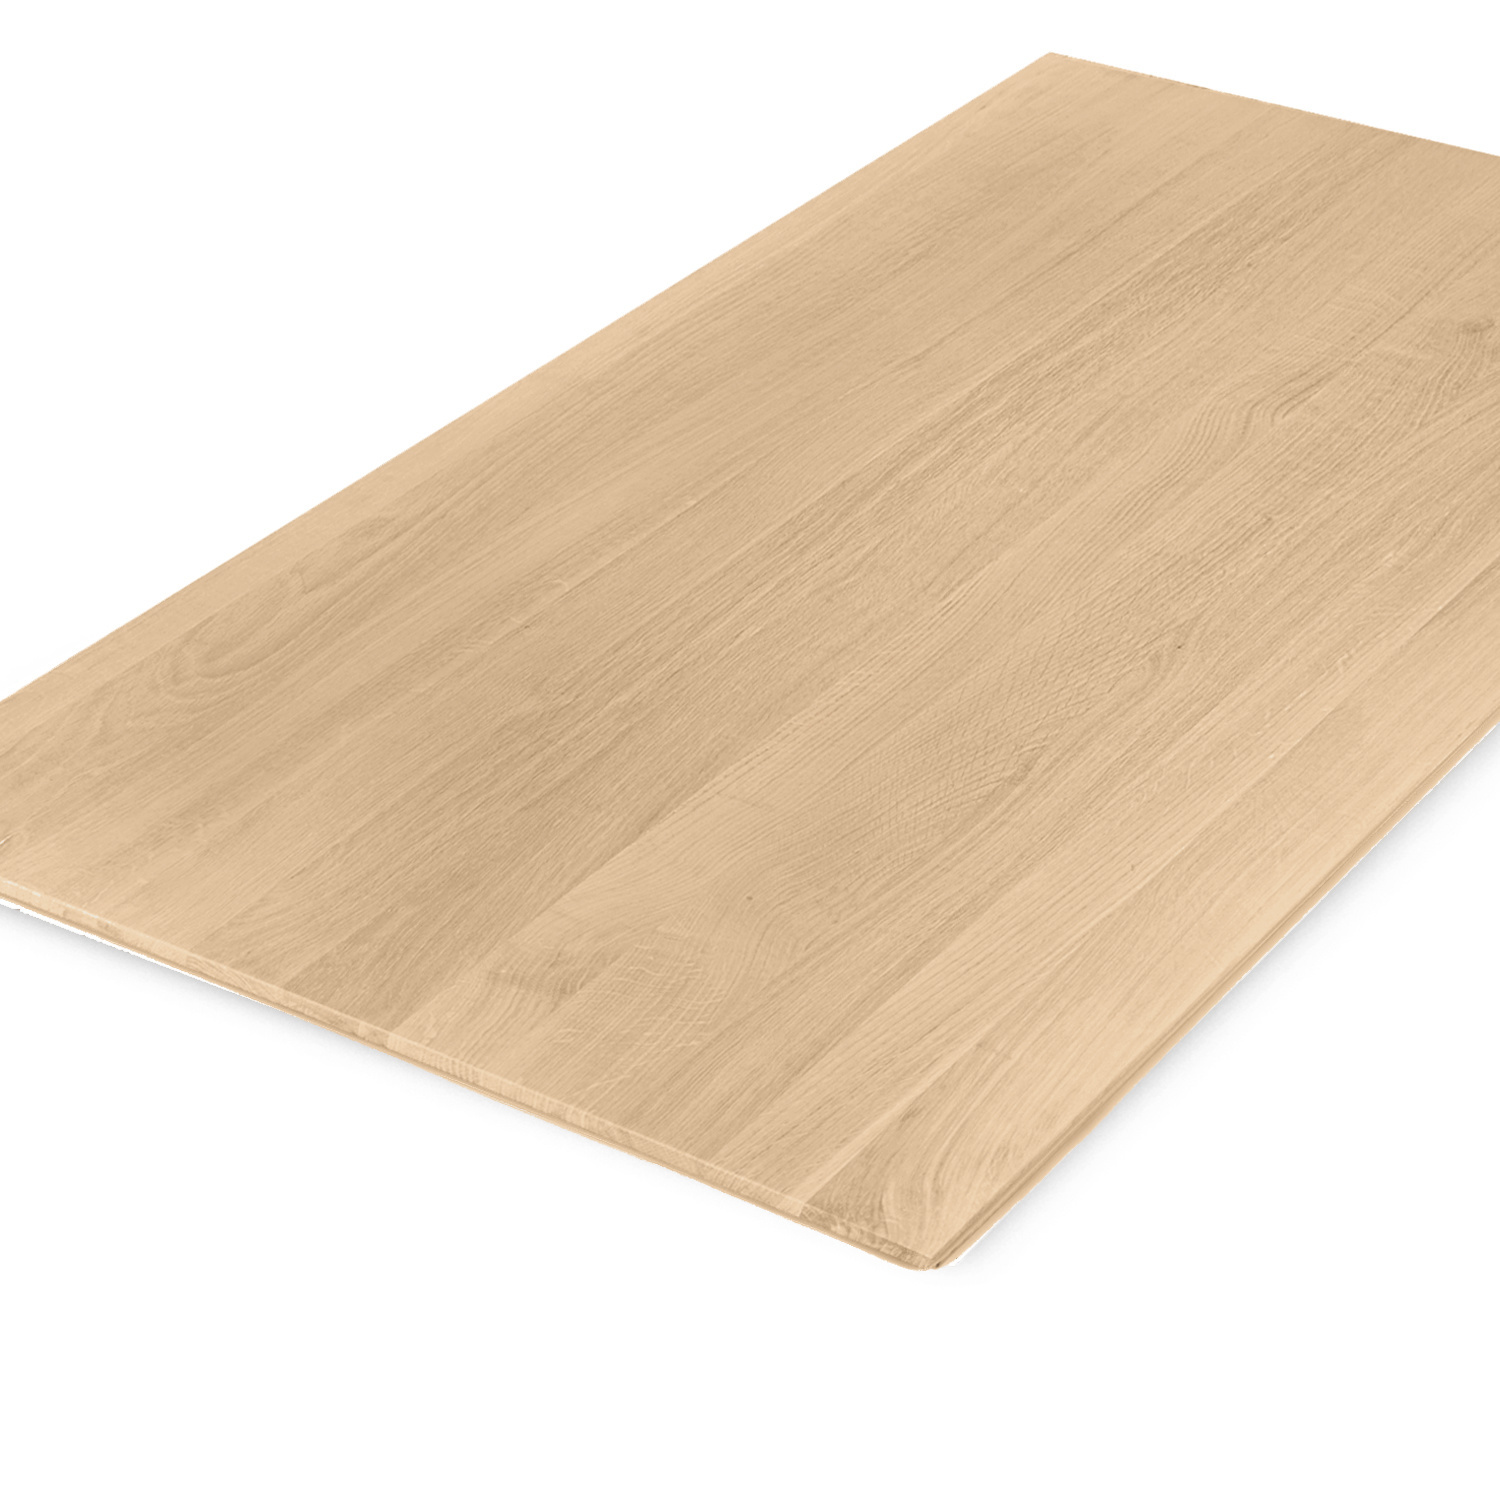  Tischplatte Eiche - Schweizer Kante - nach Maß - 2,7 cm dick (1-Schicht) - Breite Lamellen (10 - 12 cm breit) - Eichenholz A-Qualität - verleimt & künstlich getrocknet (HF 8-12%) - 50-120x50-248 cm